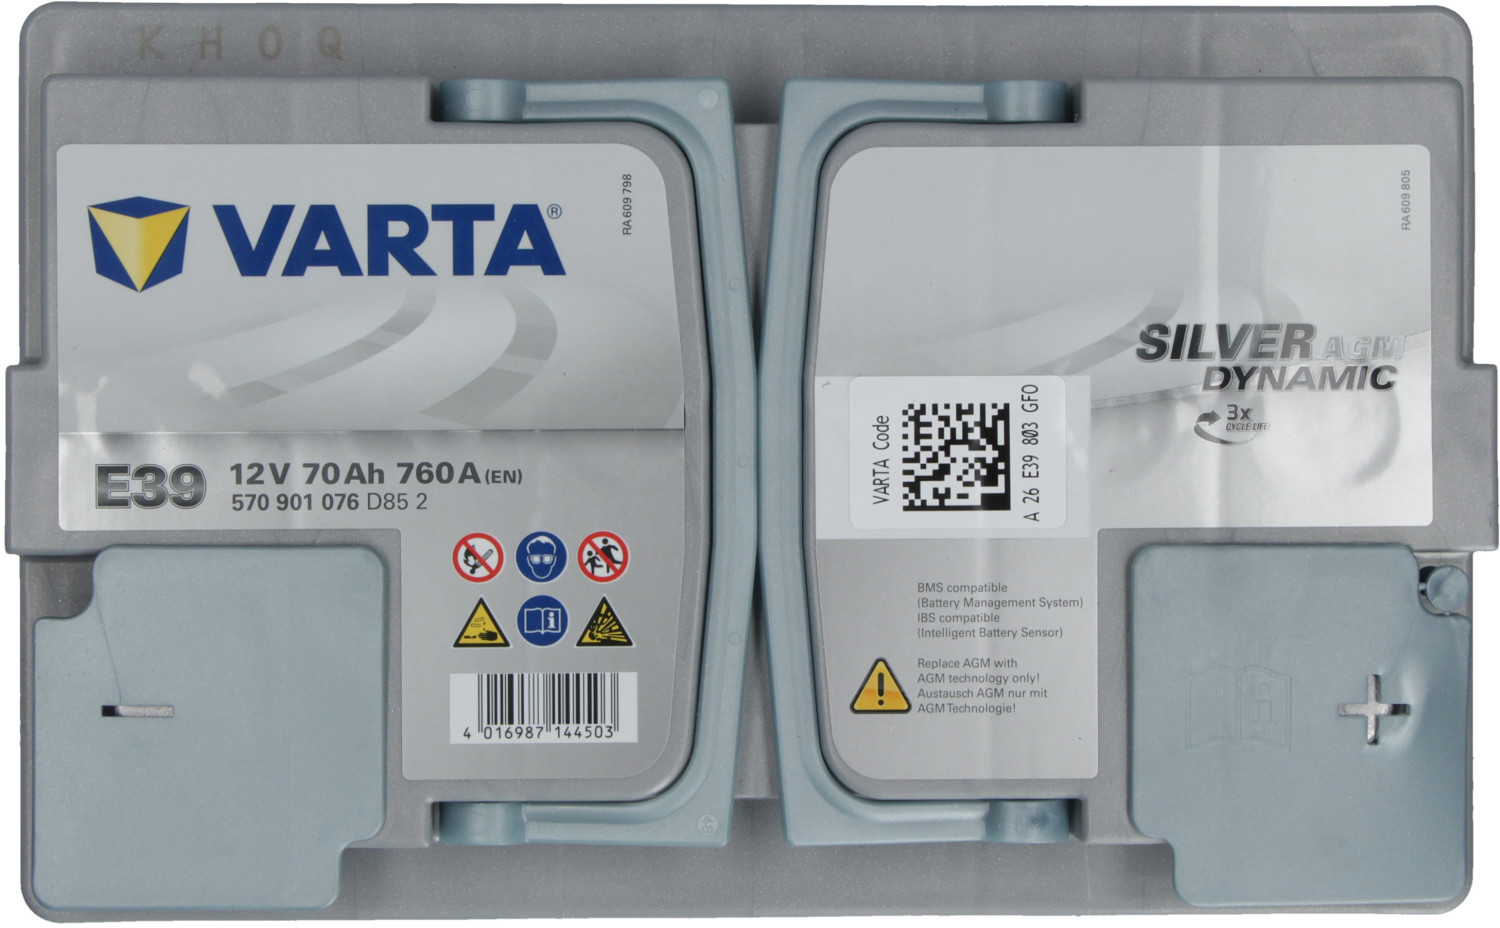 VARTA Silver Dynamic AGM 12V 70Ah E39 ab € 129,99